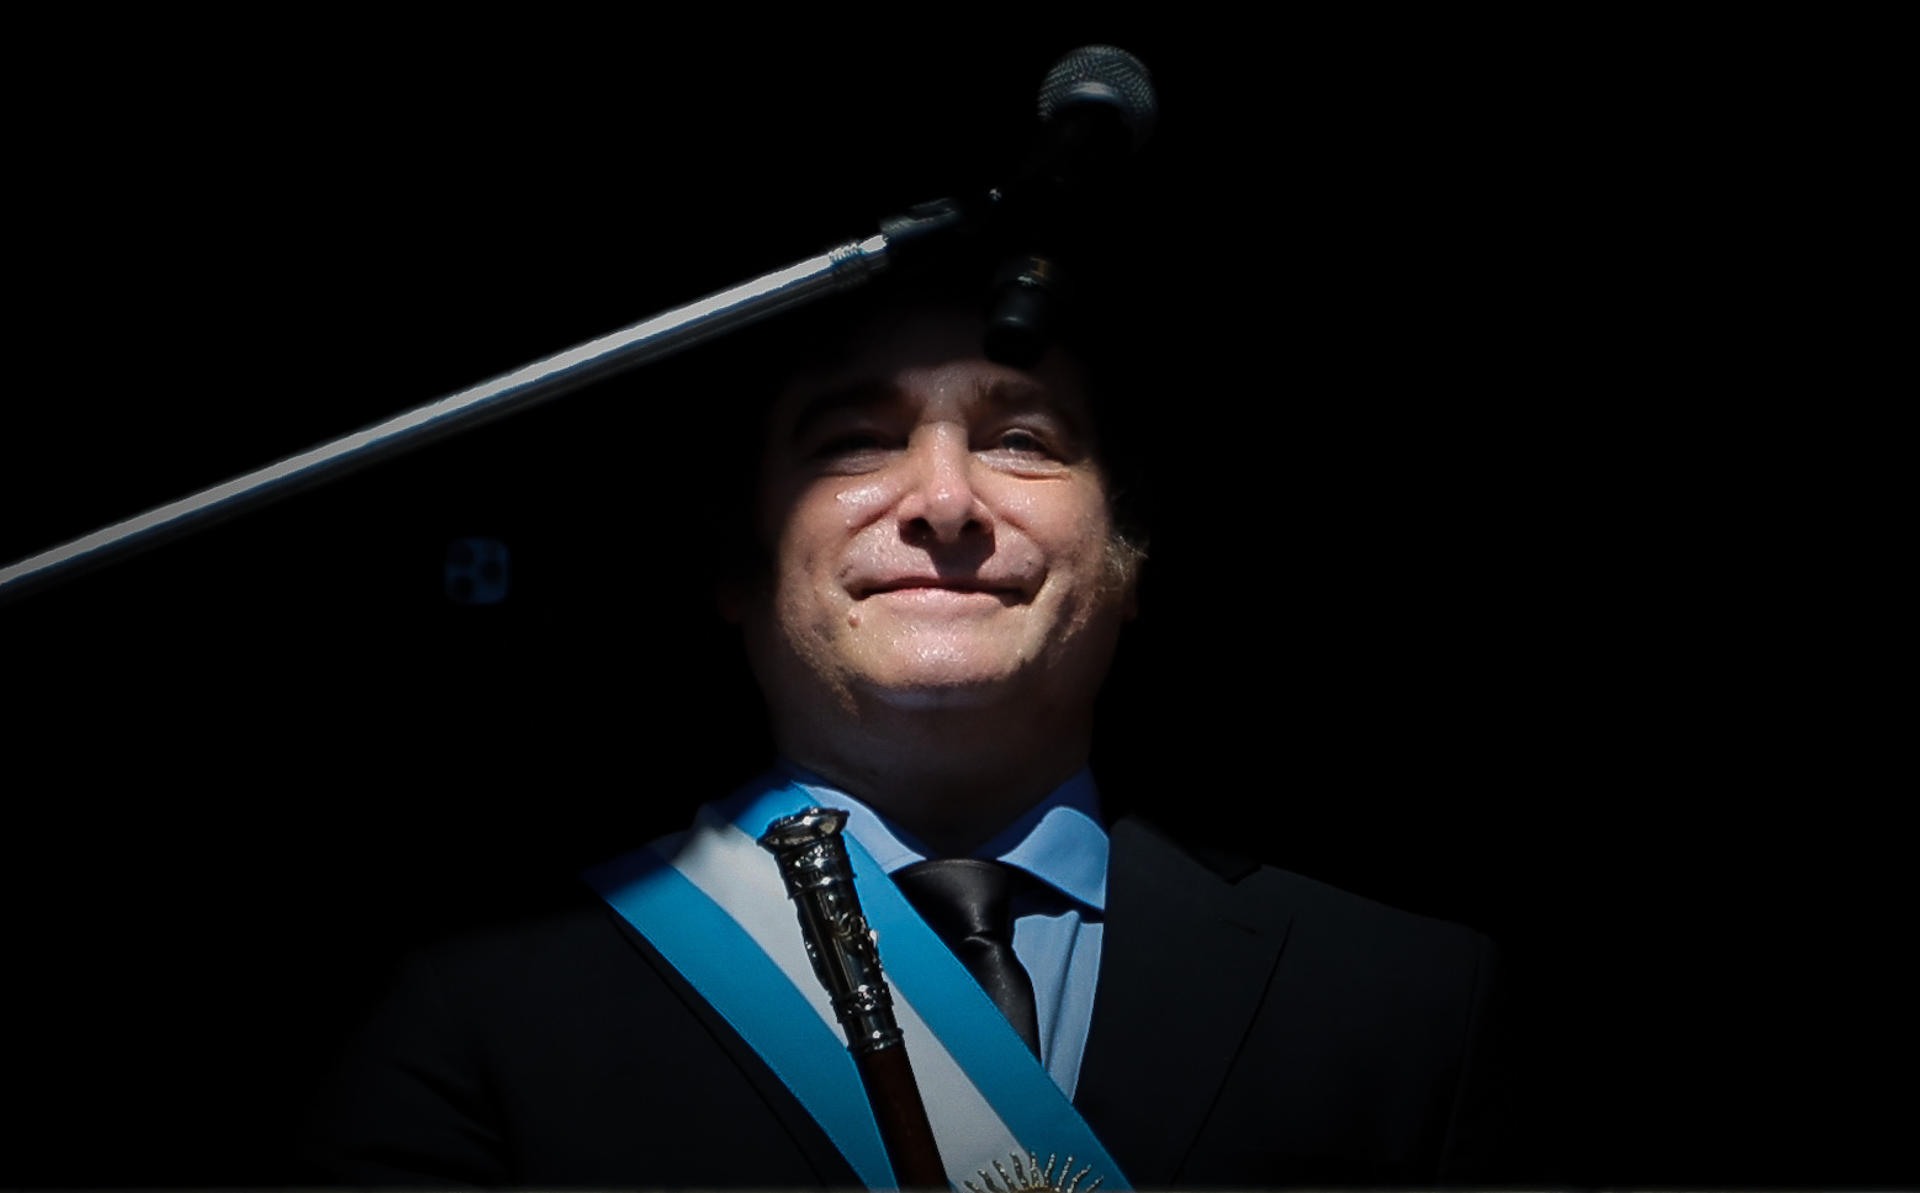 El presidente electo de Argentina, Javier Milei, en una fotografía de archivo. EFE/ Juan Ignacio Roncoroni